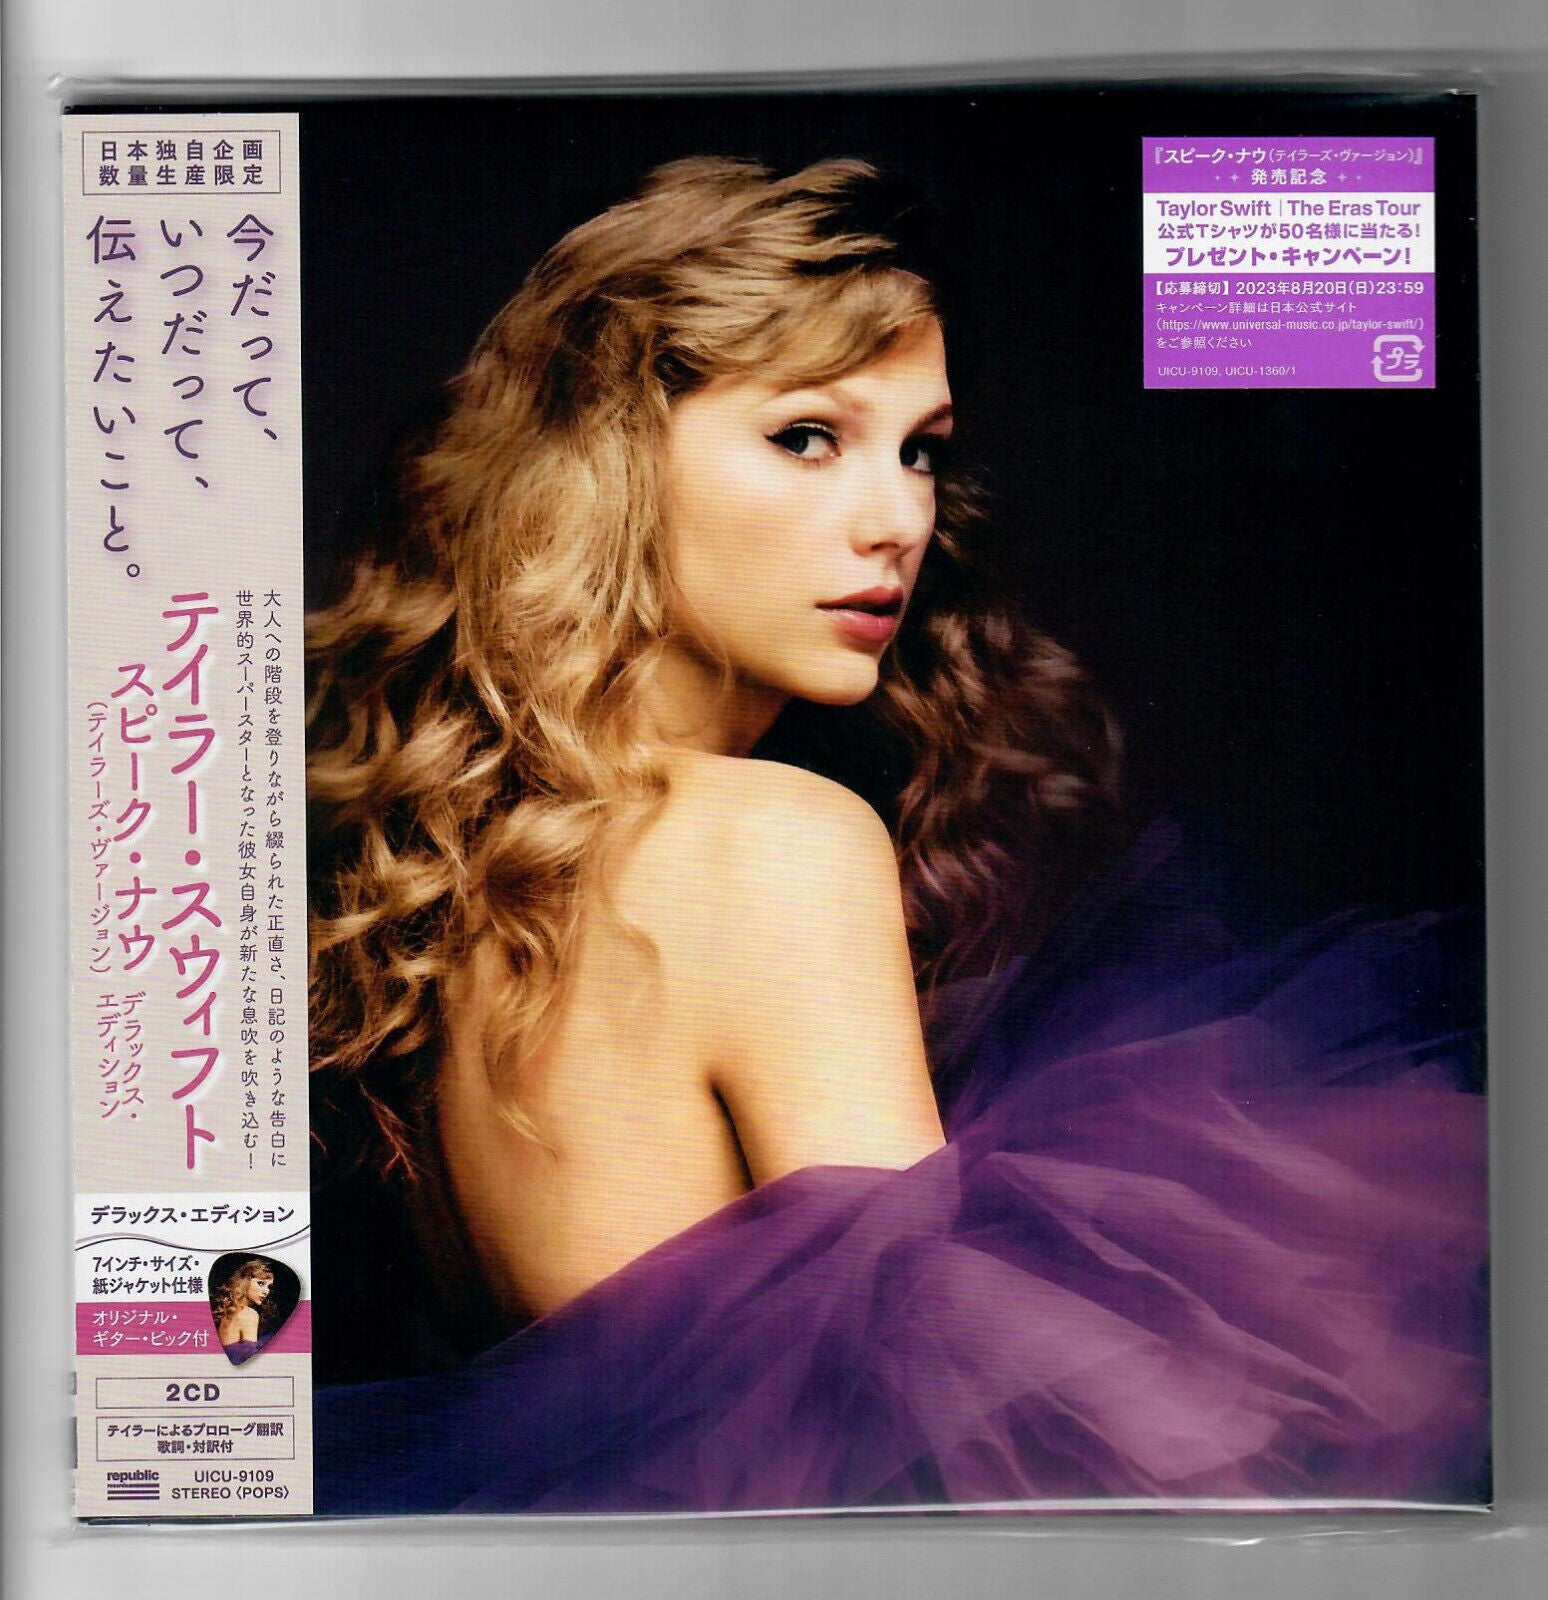 Mini Vinyl Lover Taylor Swift -  Denmark